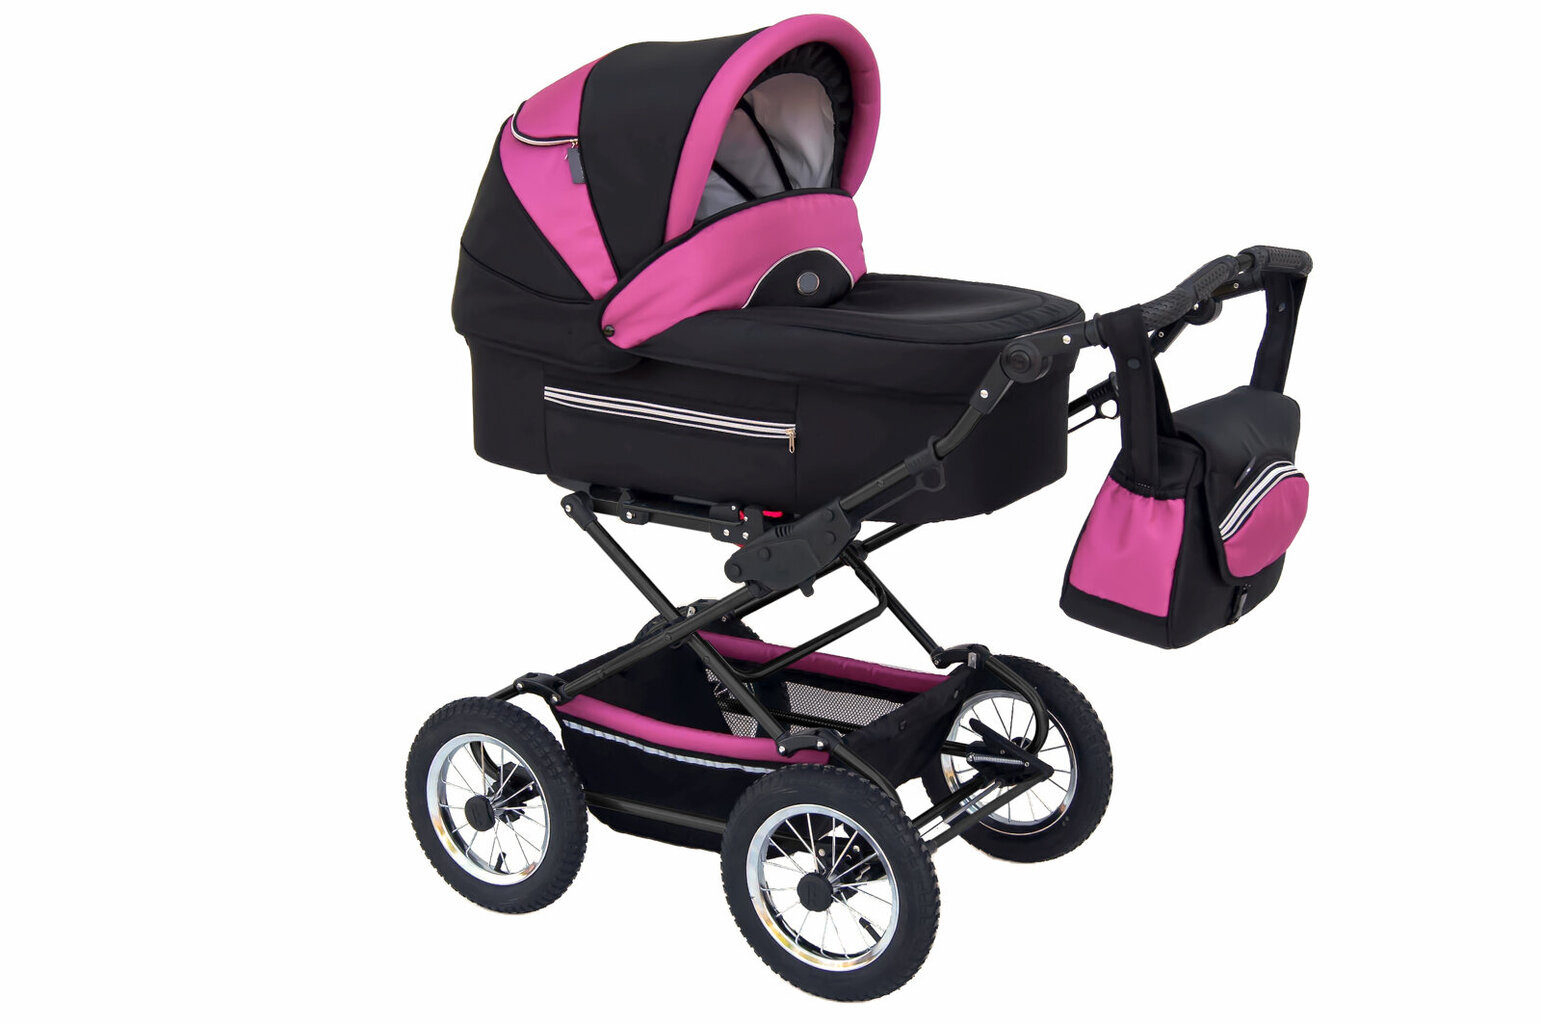 Vežimėlis - automobilinė kėdutė Baby Fashion Fanari 3in1, black/pink kaina ir informacija | Vežimėliai | pigu.lt